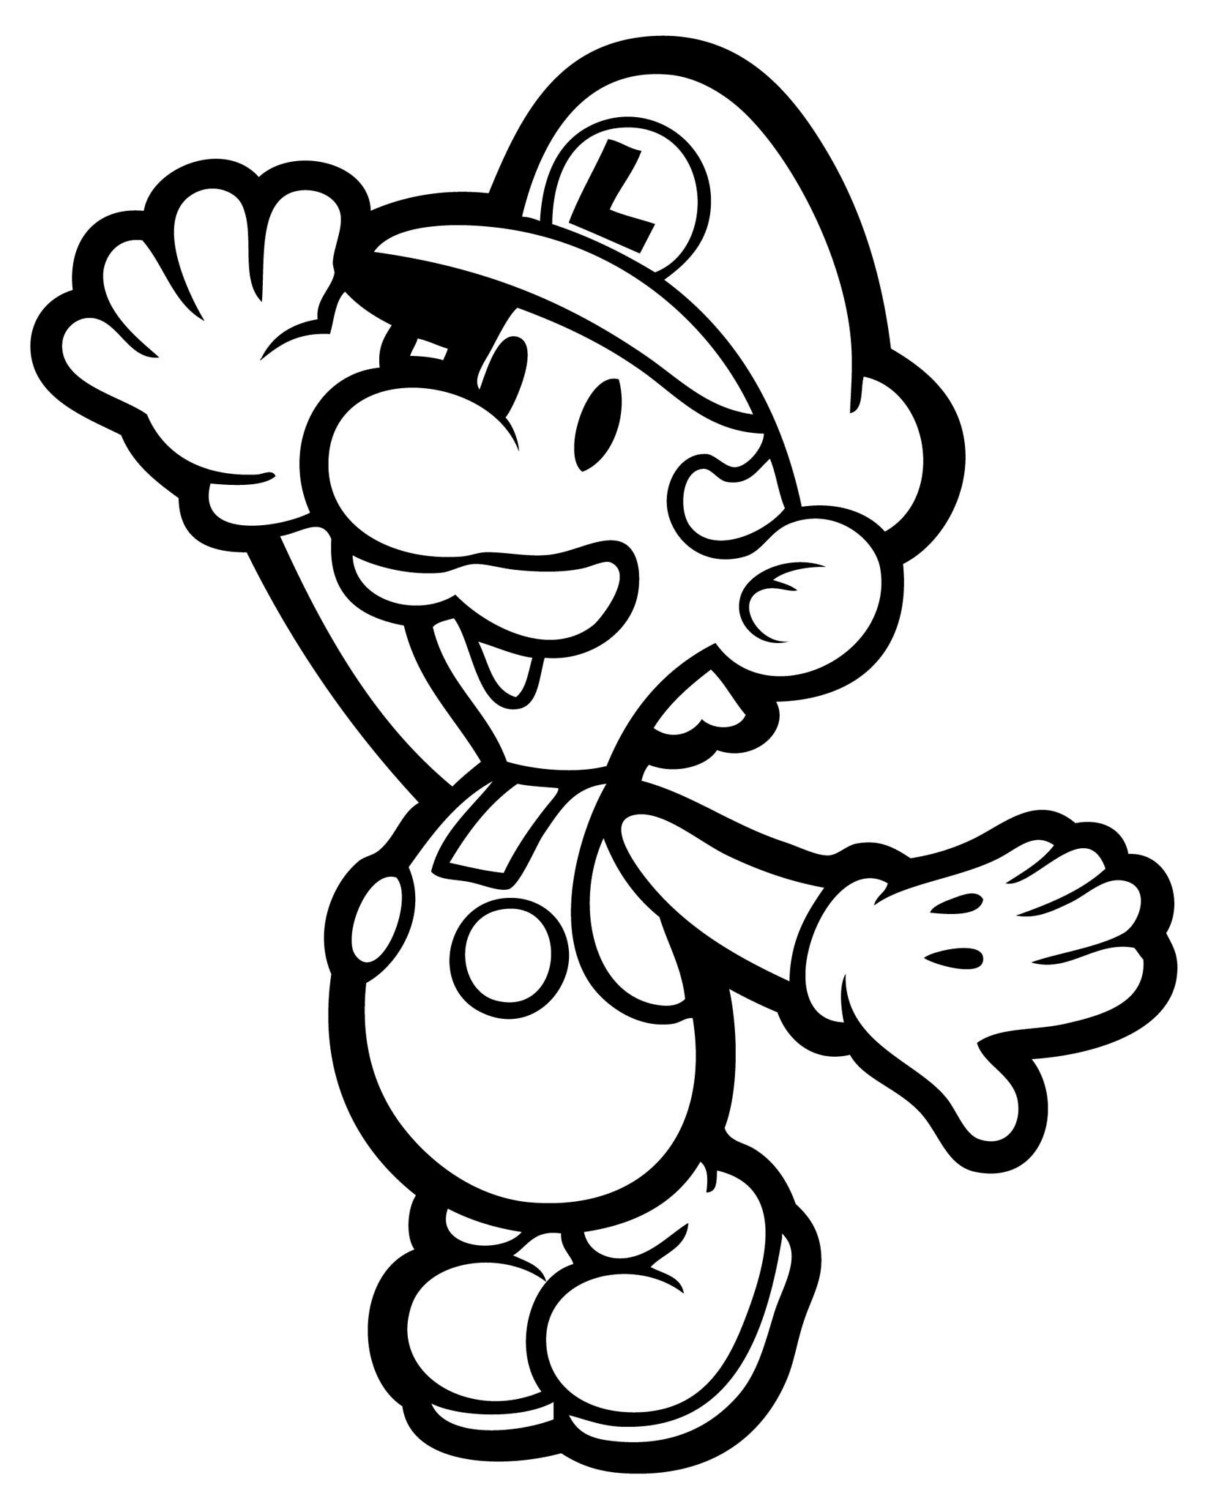  Luigi and Mario coloring pages | Mario Bros games | Mario Bros coloring pages | color online